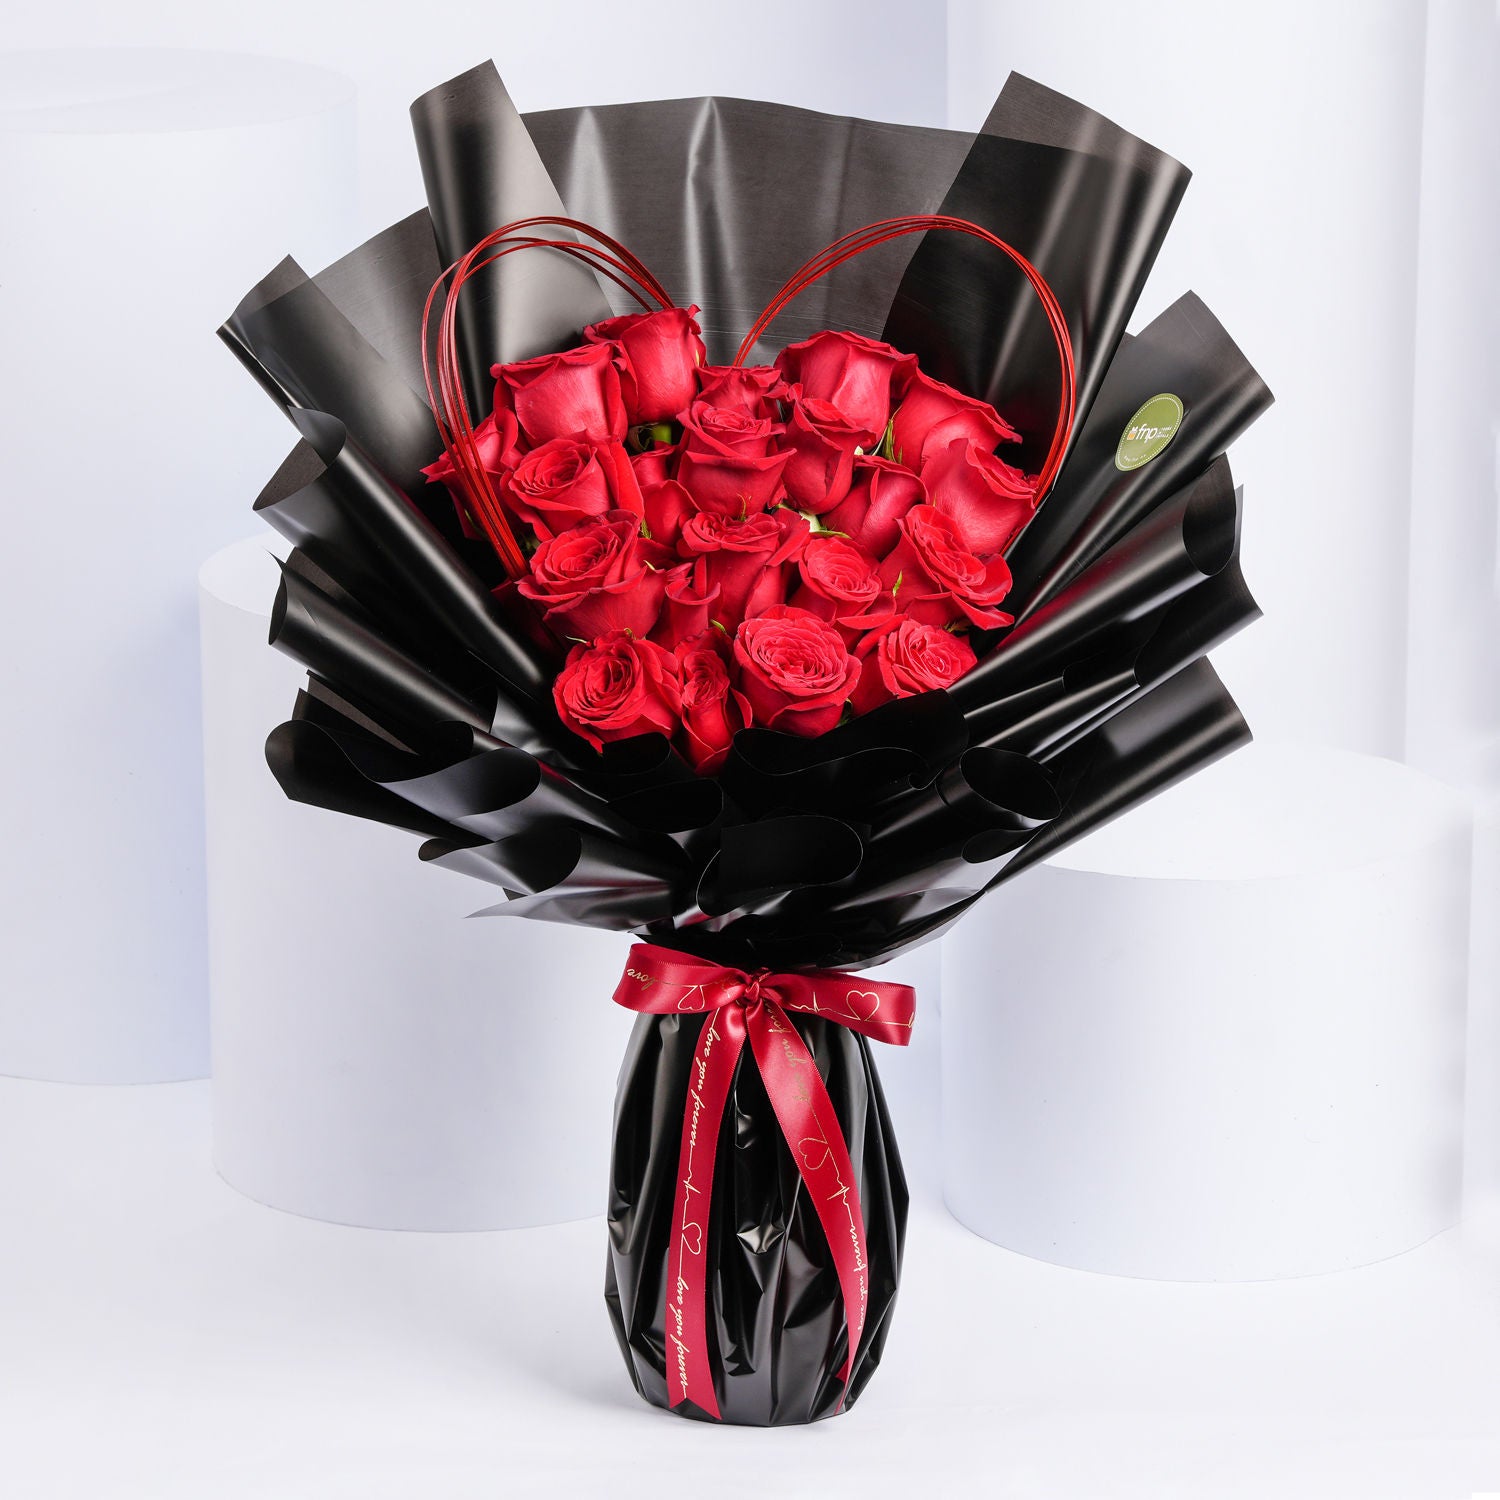 بوكيه القلب - باقة 18 وردة جوري حمراء مع شكل قلب في غلاف أسود